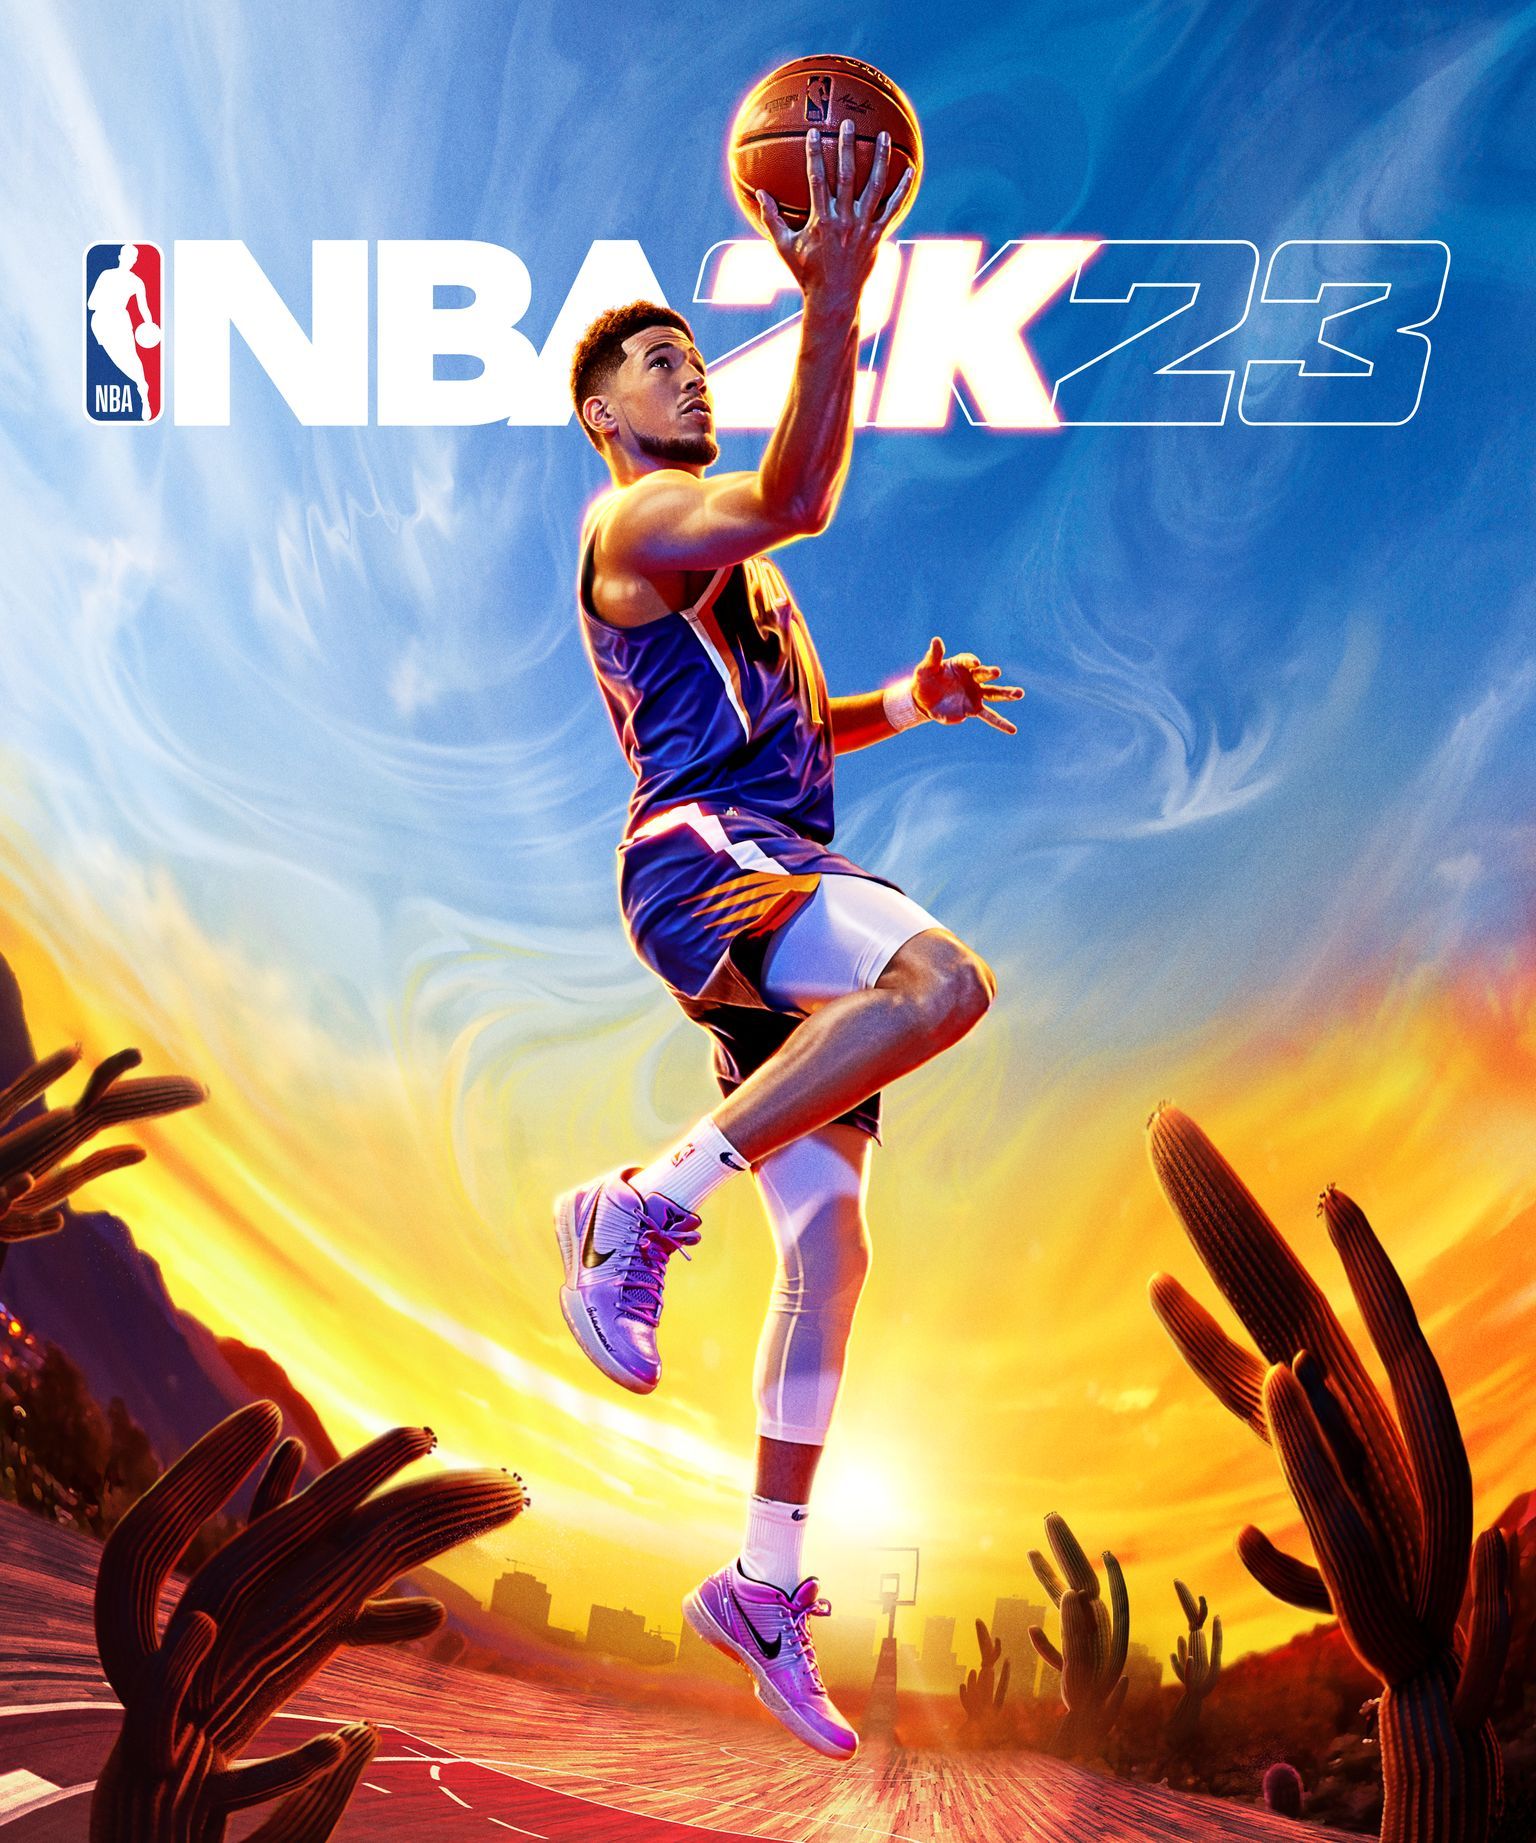 The Digital Deluxe cross-gen edition of NBA 2K23.